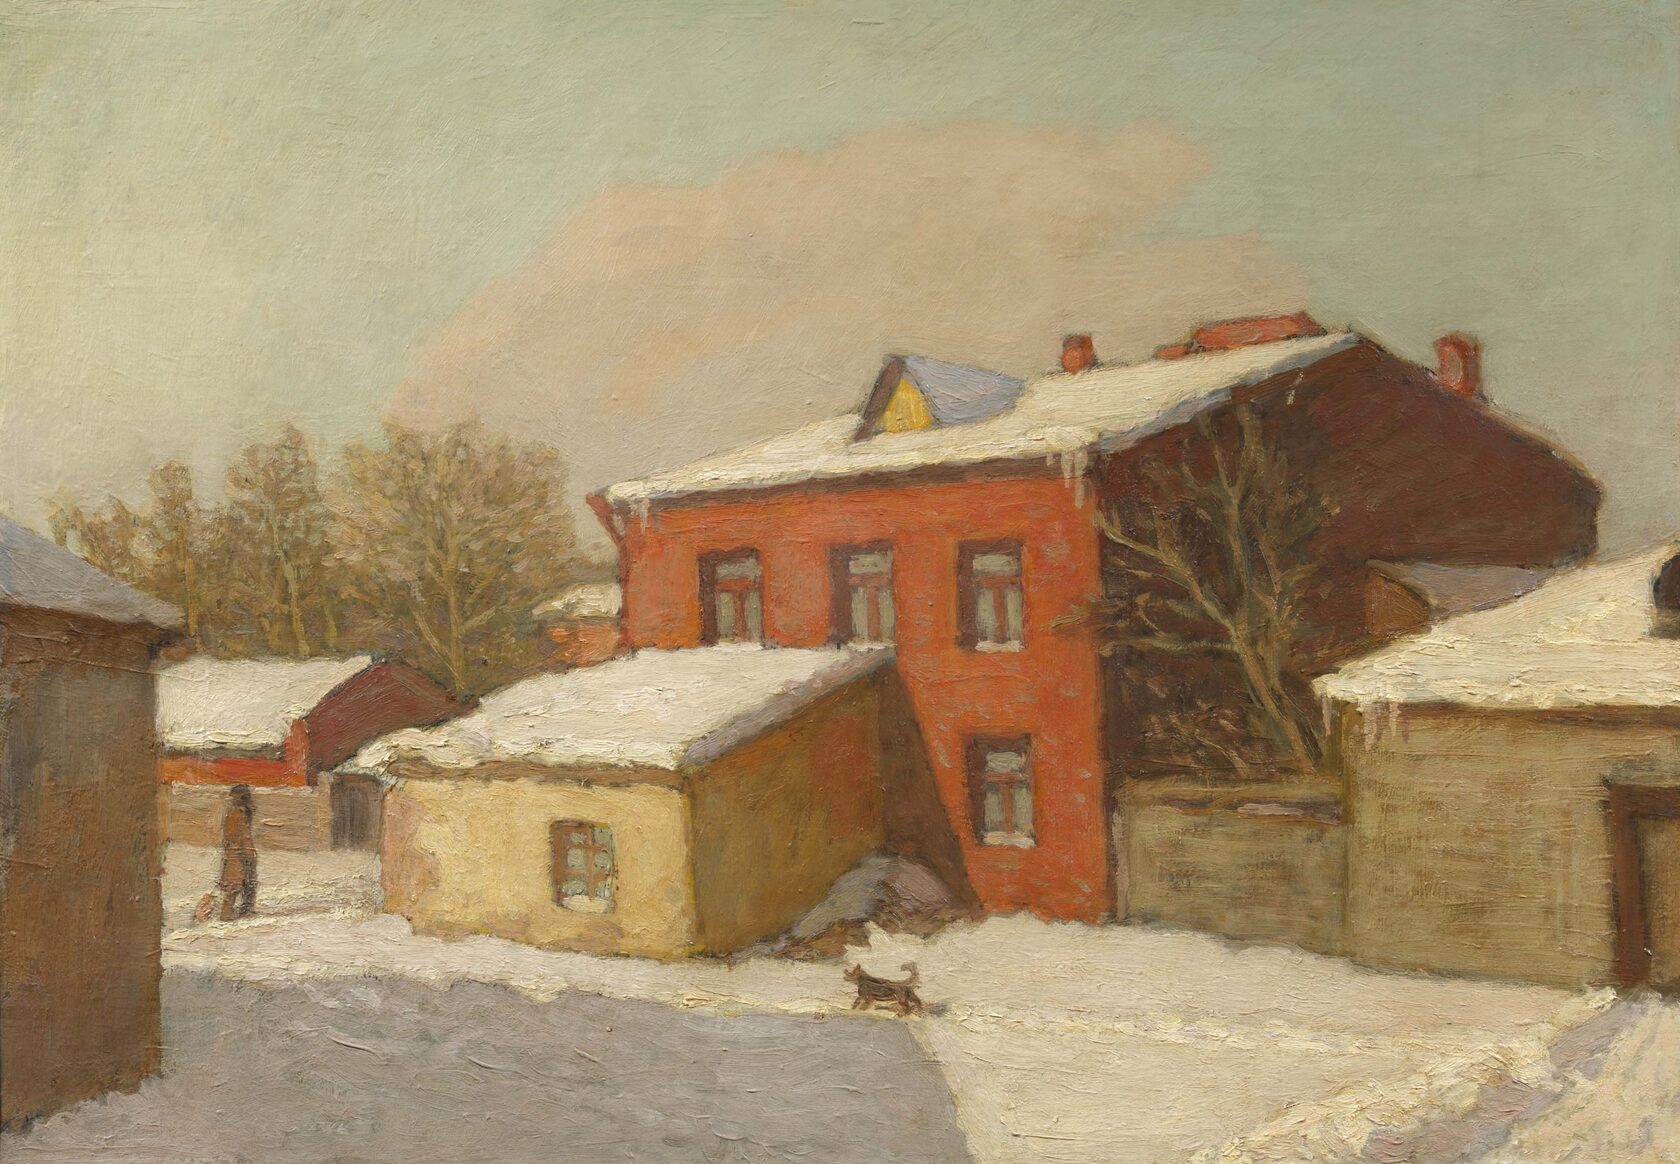  Зимний пейзаж. 1934 